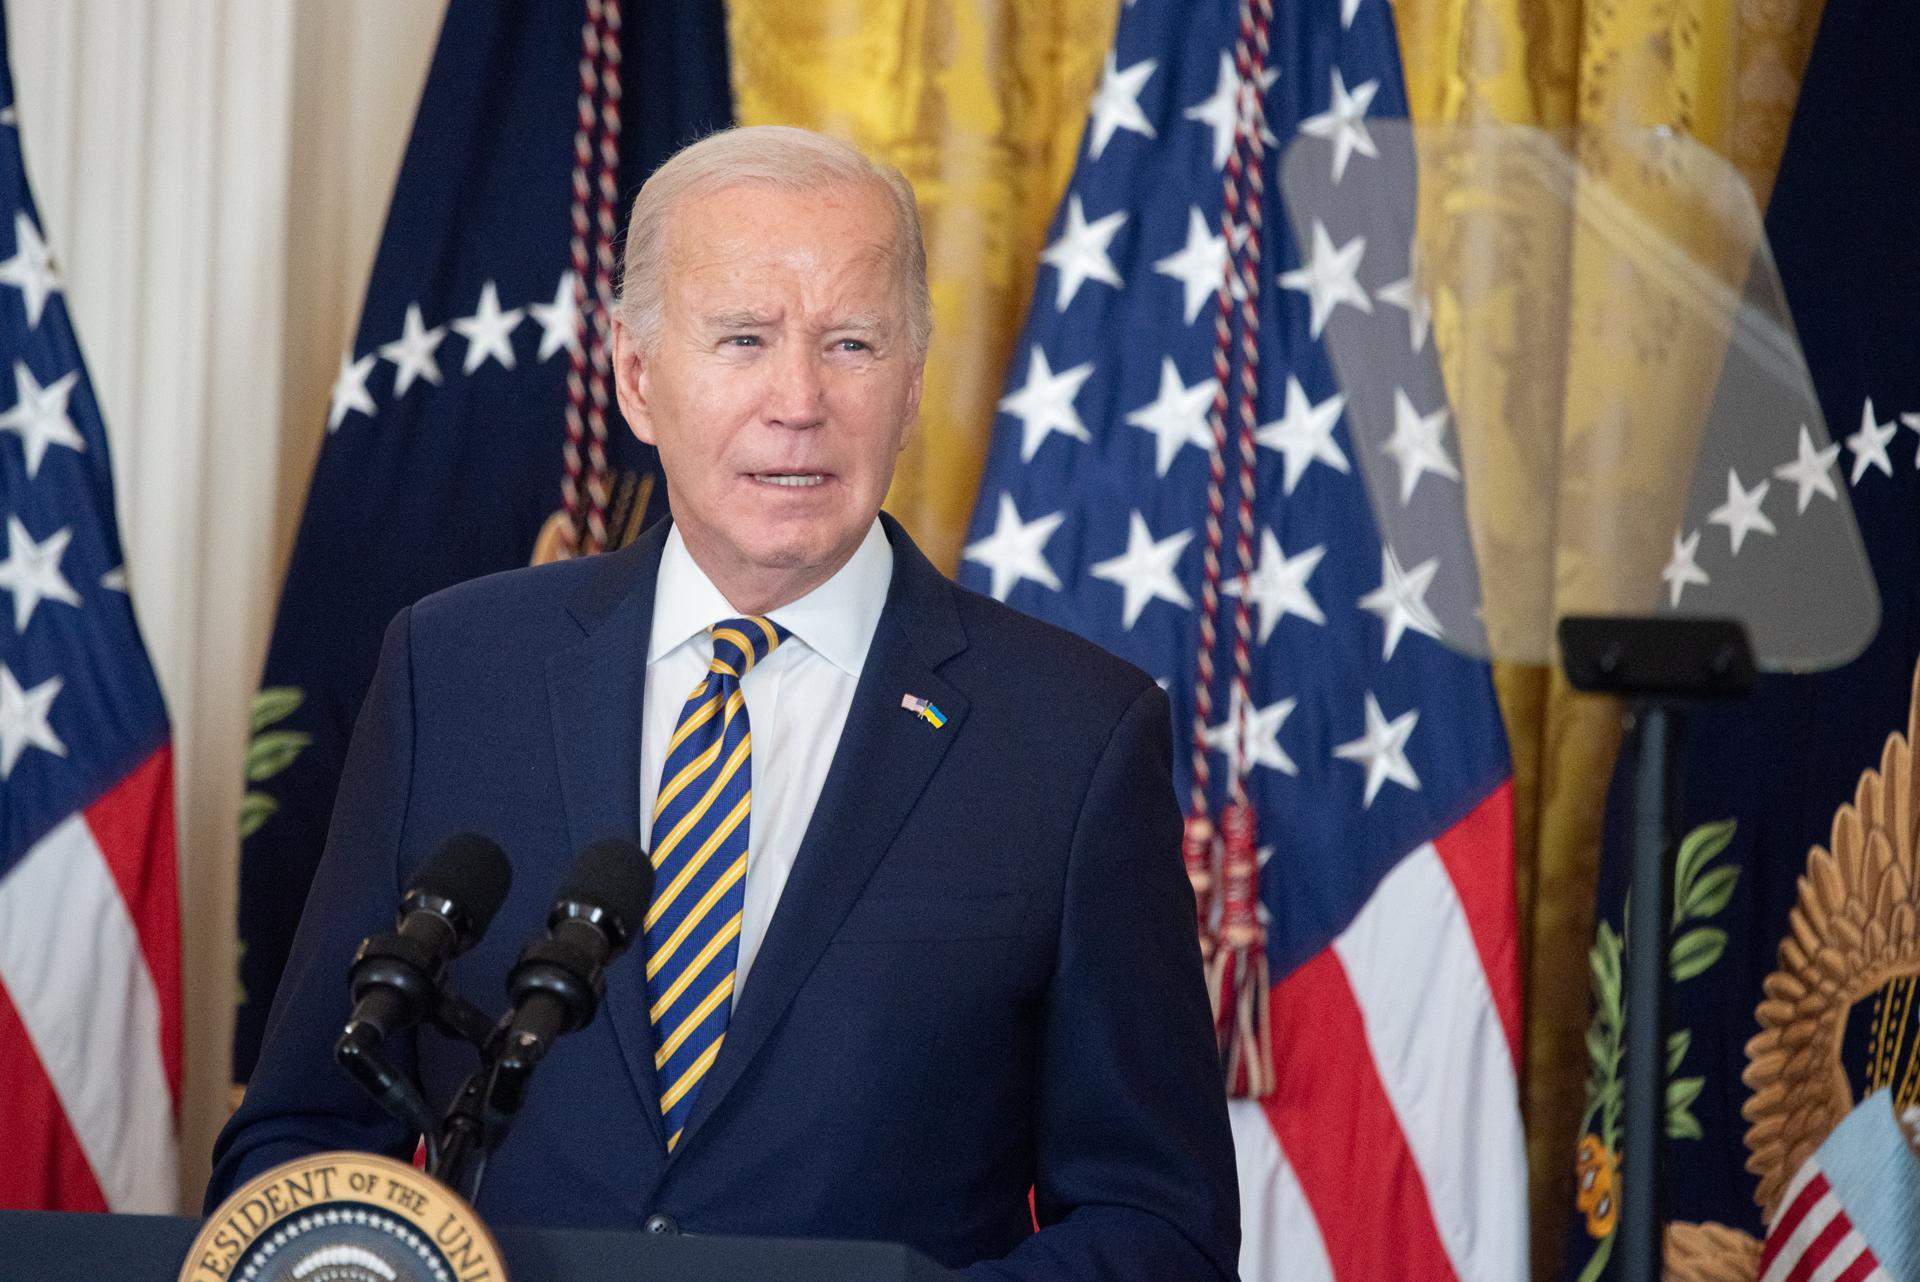 El fiscal concluye que Biden retuvo documentos clasificados, pero no presentará cargos